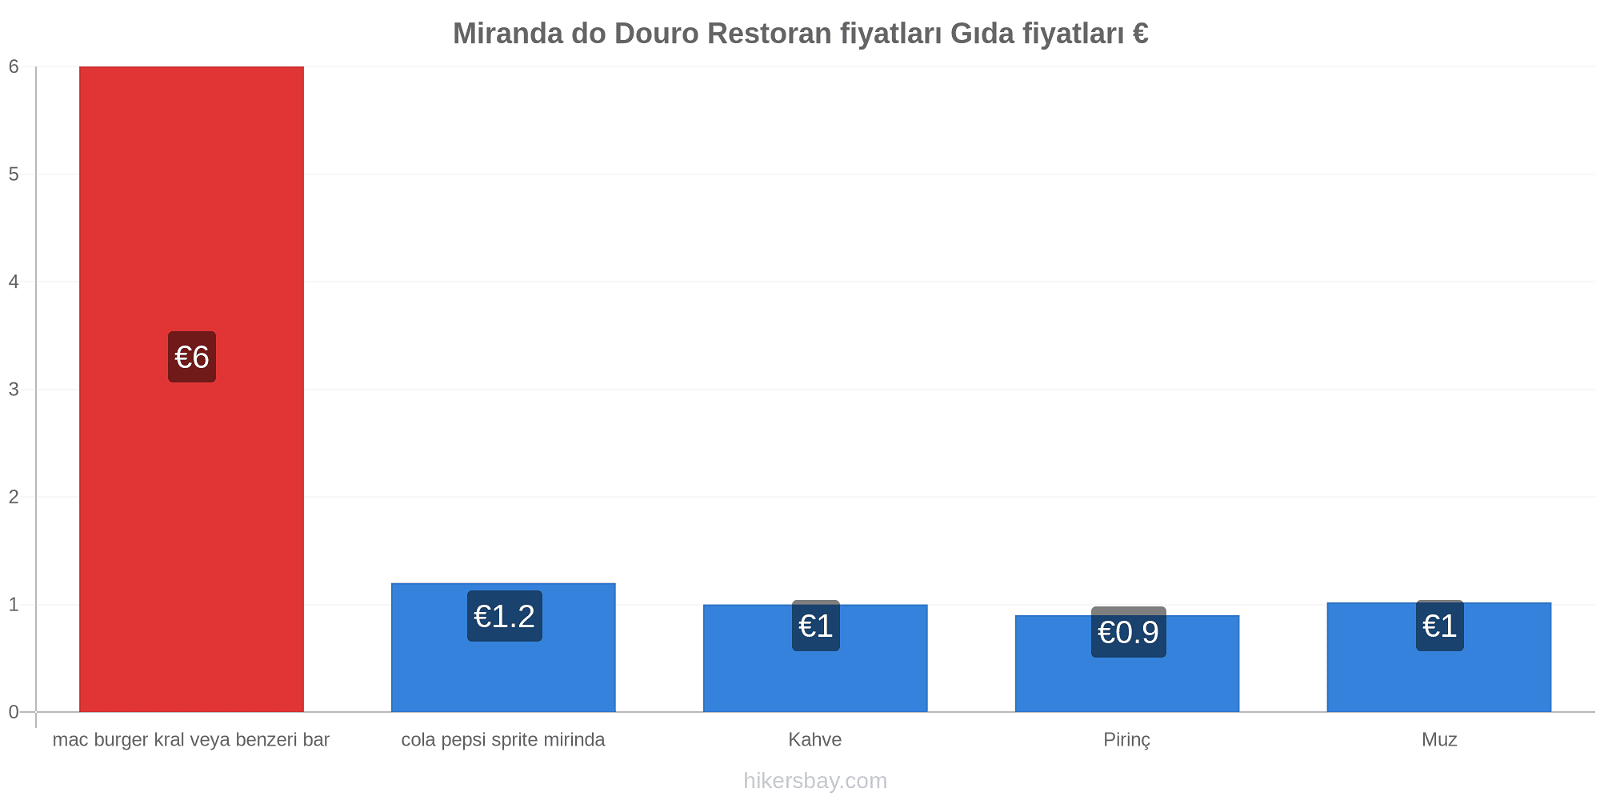 Miranda do Douro fiyat değişiklikleri hikersbay.com